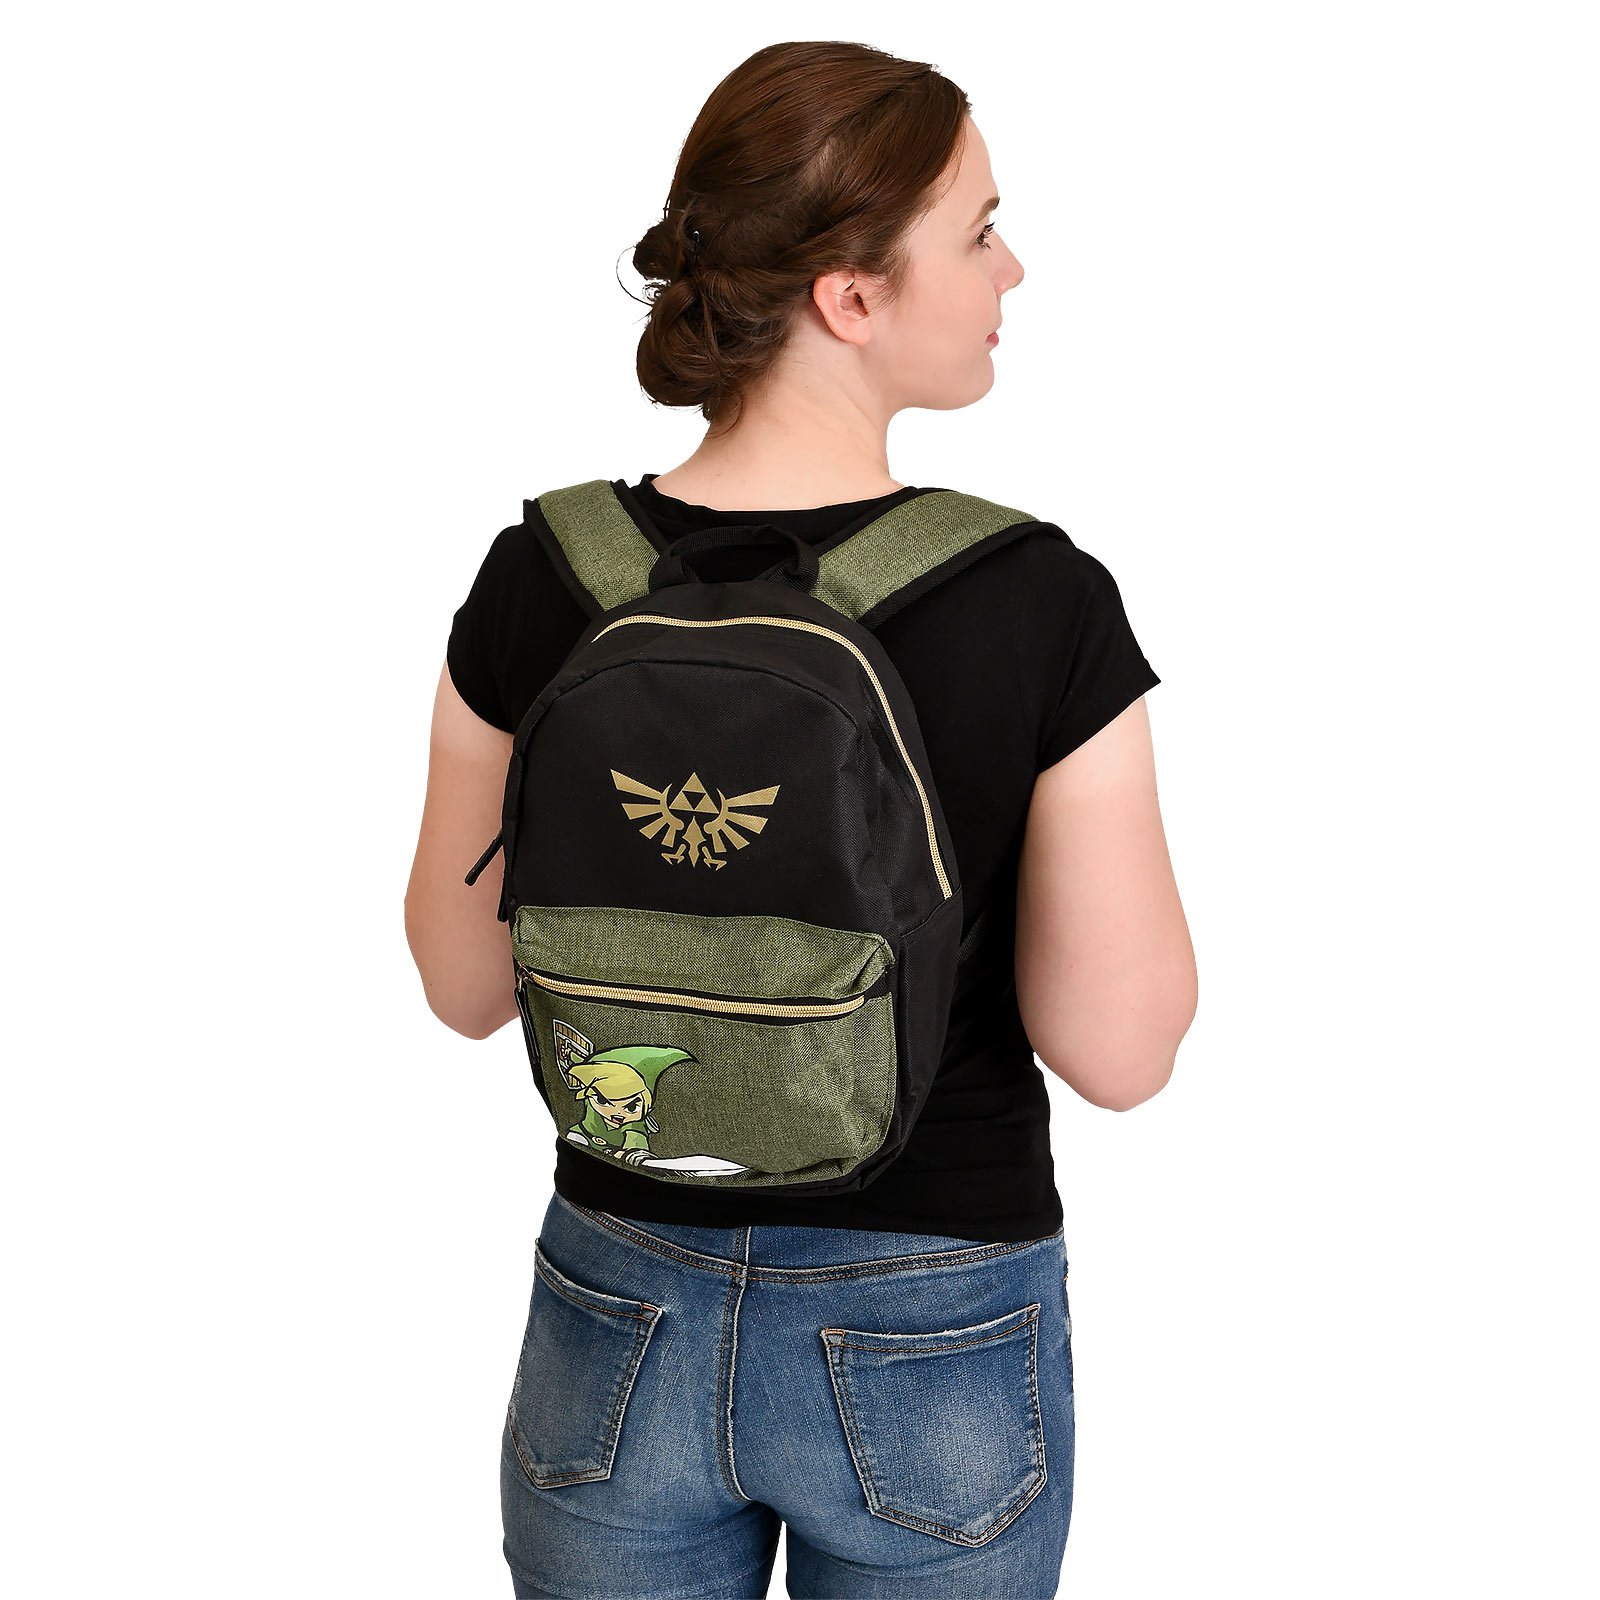 Zelda - Link Wind Waker Backpack for Kids